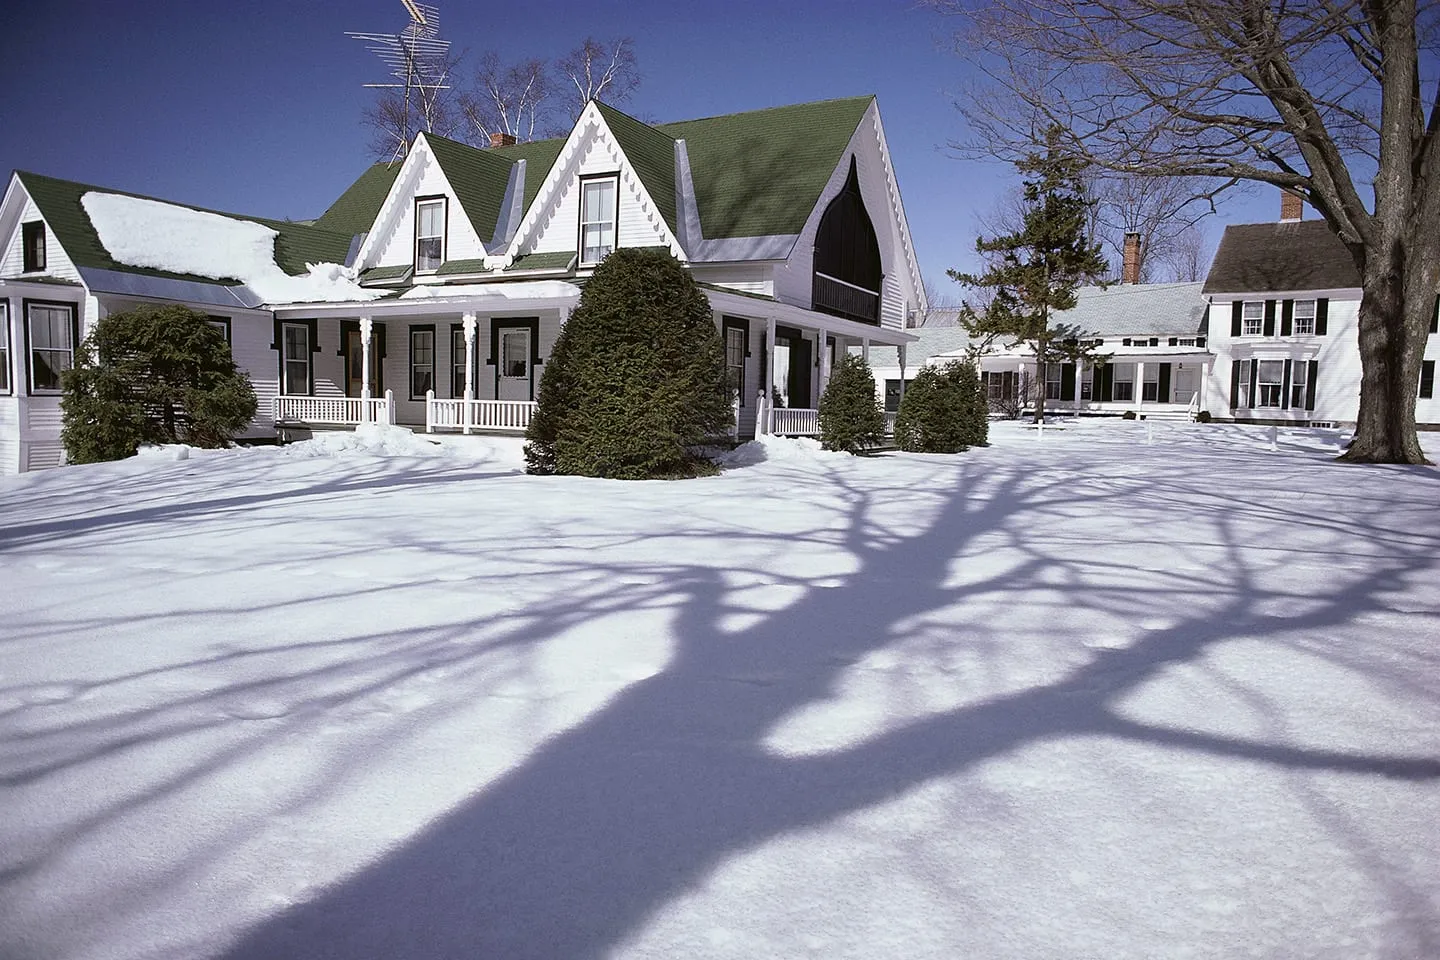 winter lawn care tips in O'Fallon Illinois